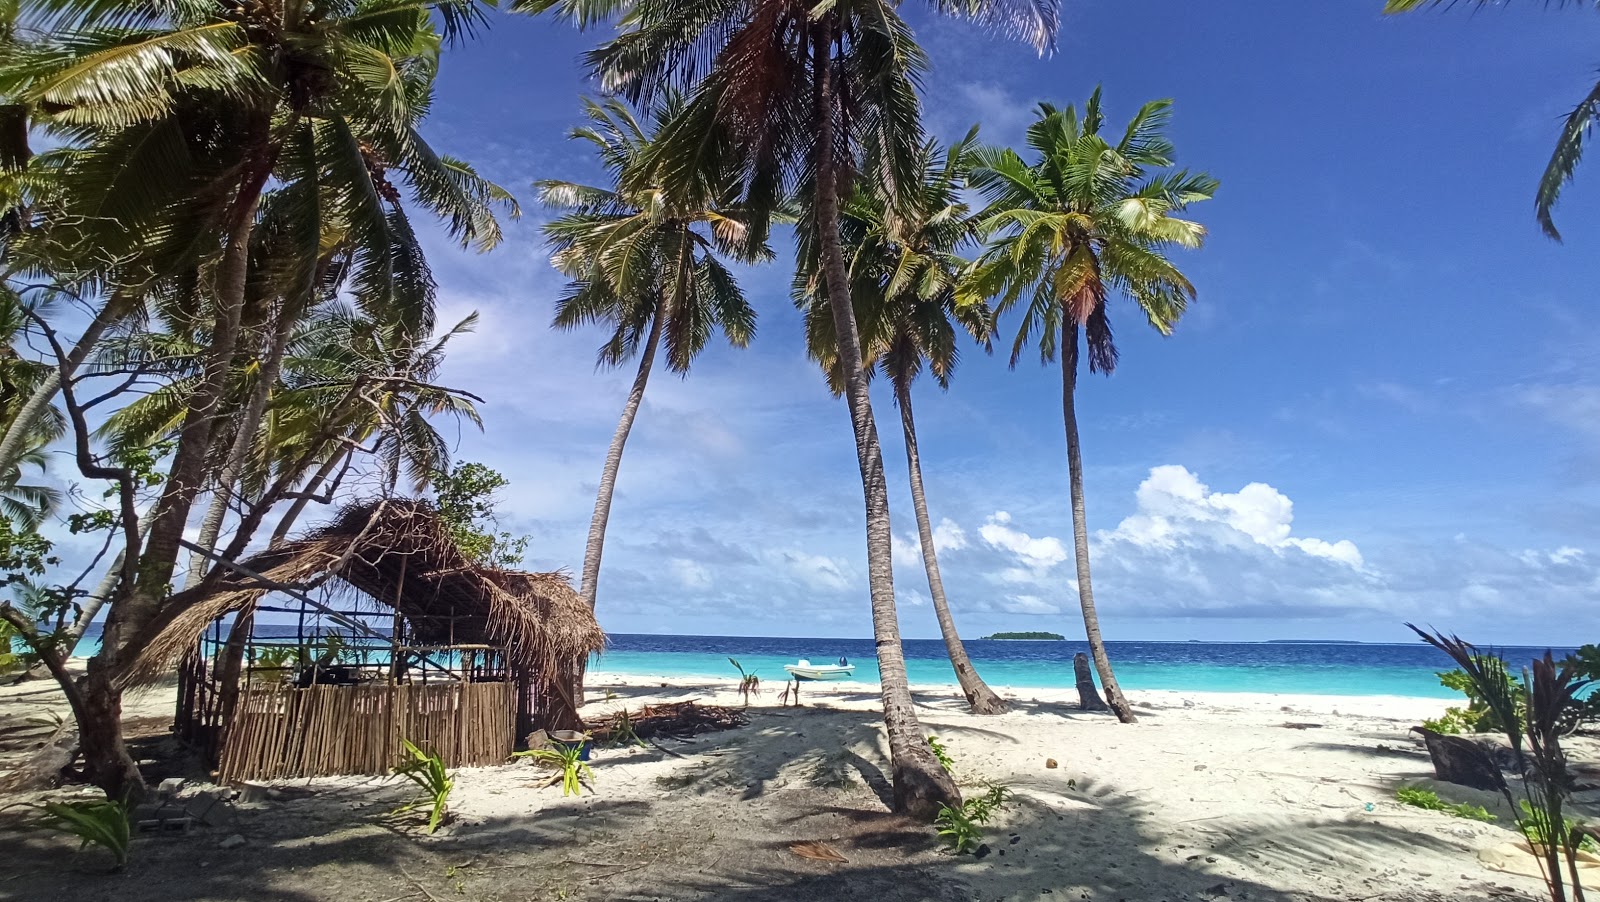 Foto af Faruhulhudhoo Beach - populært sted blandt afslapningskendere